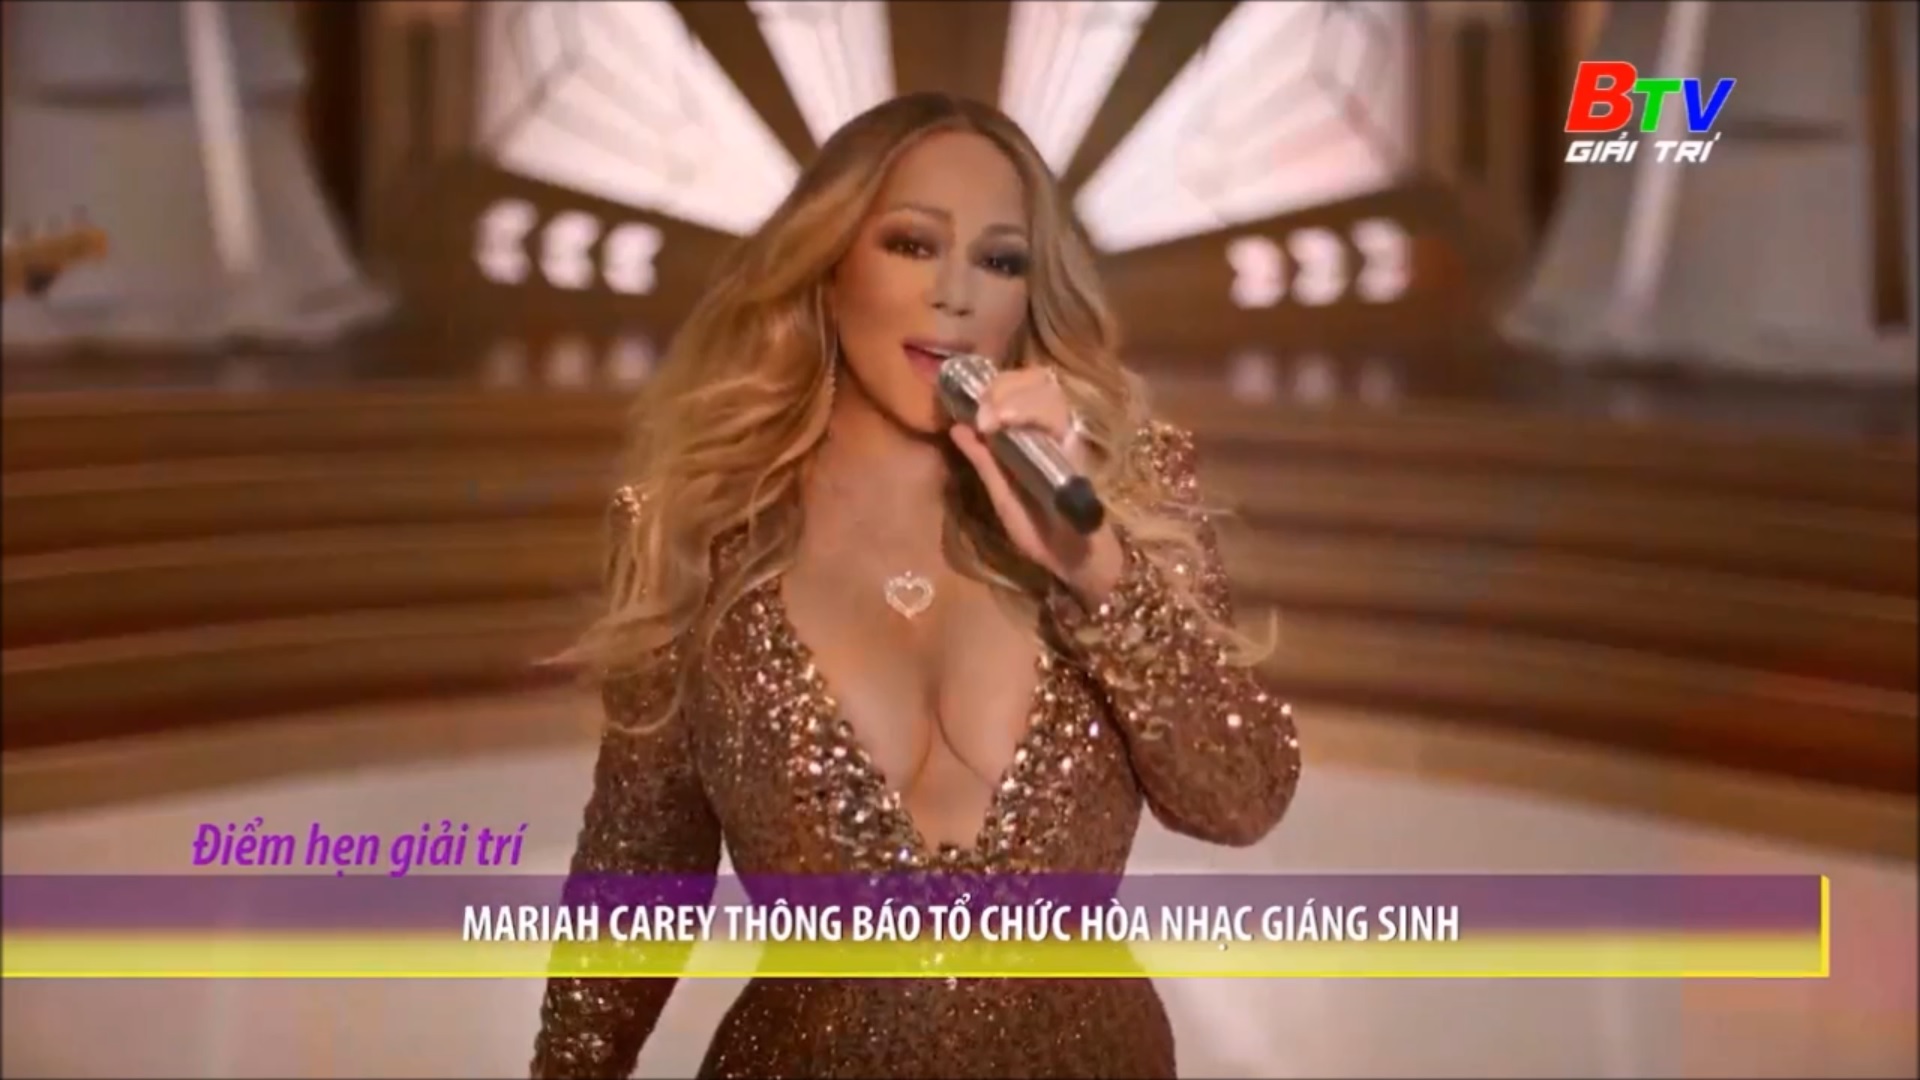 Mariah Carey thông báo tổ chức hòa nhạc giáng sinh